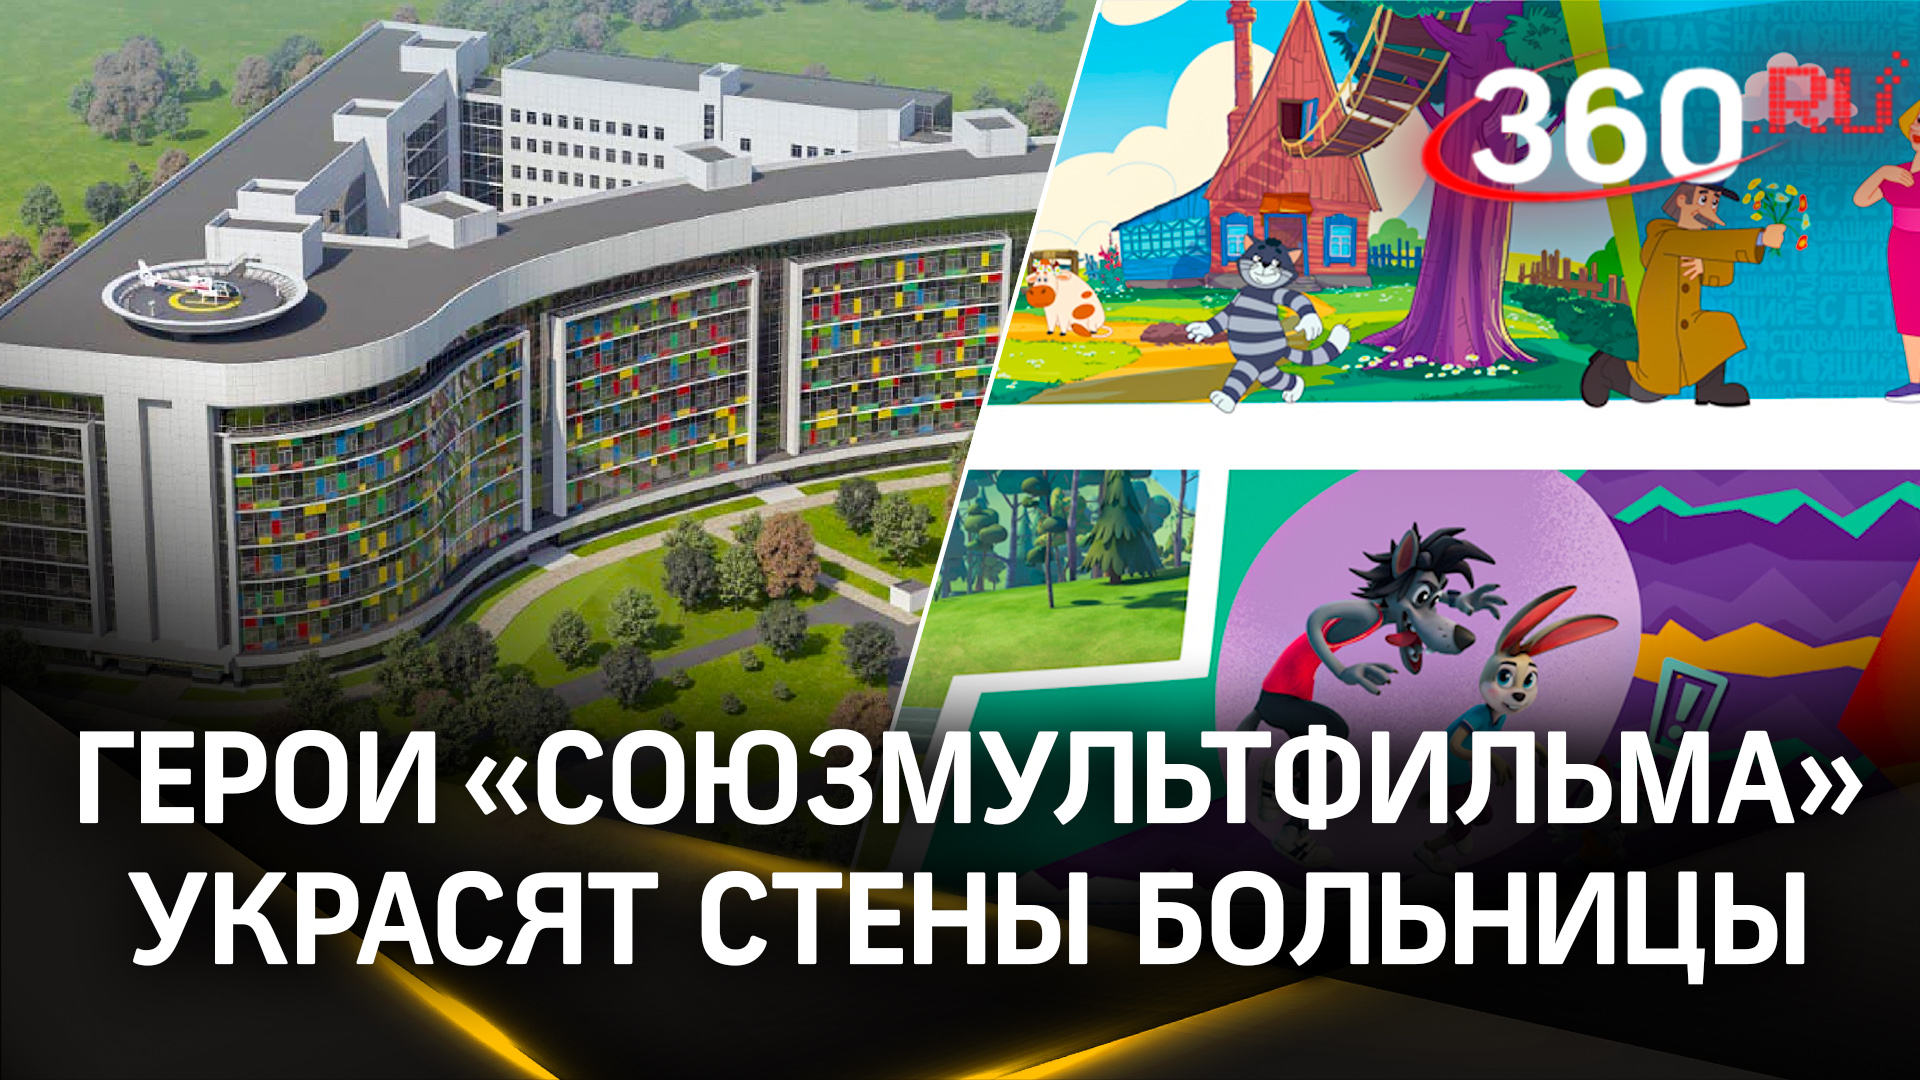 И стены лечат: герои «Союзмультфильма» появятся на стенах детского госпиталя в Красногорске